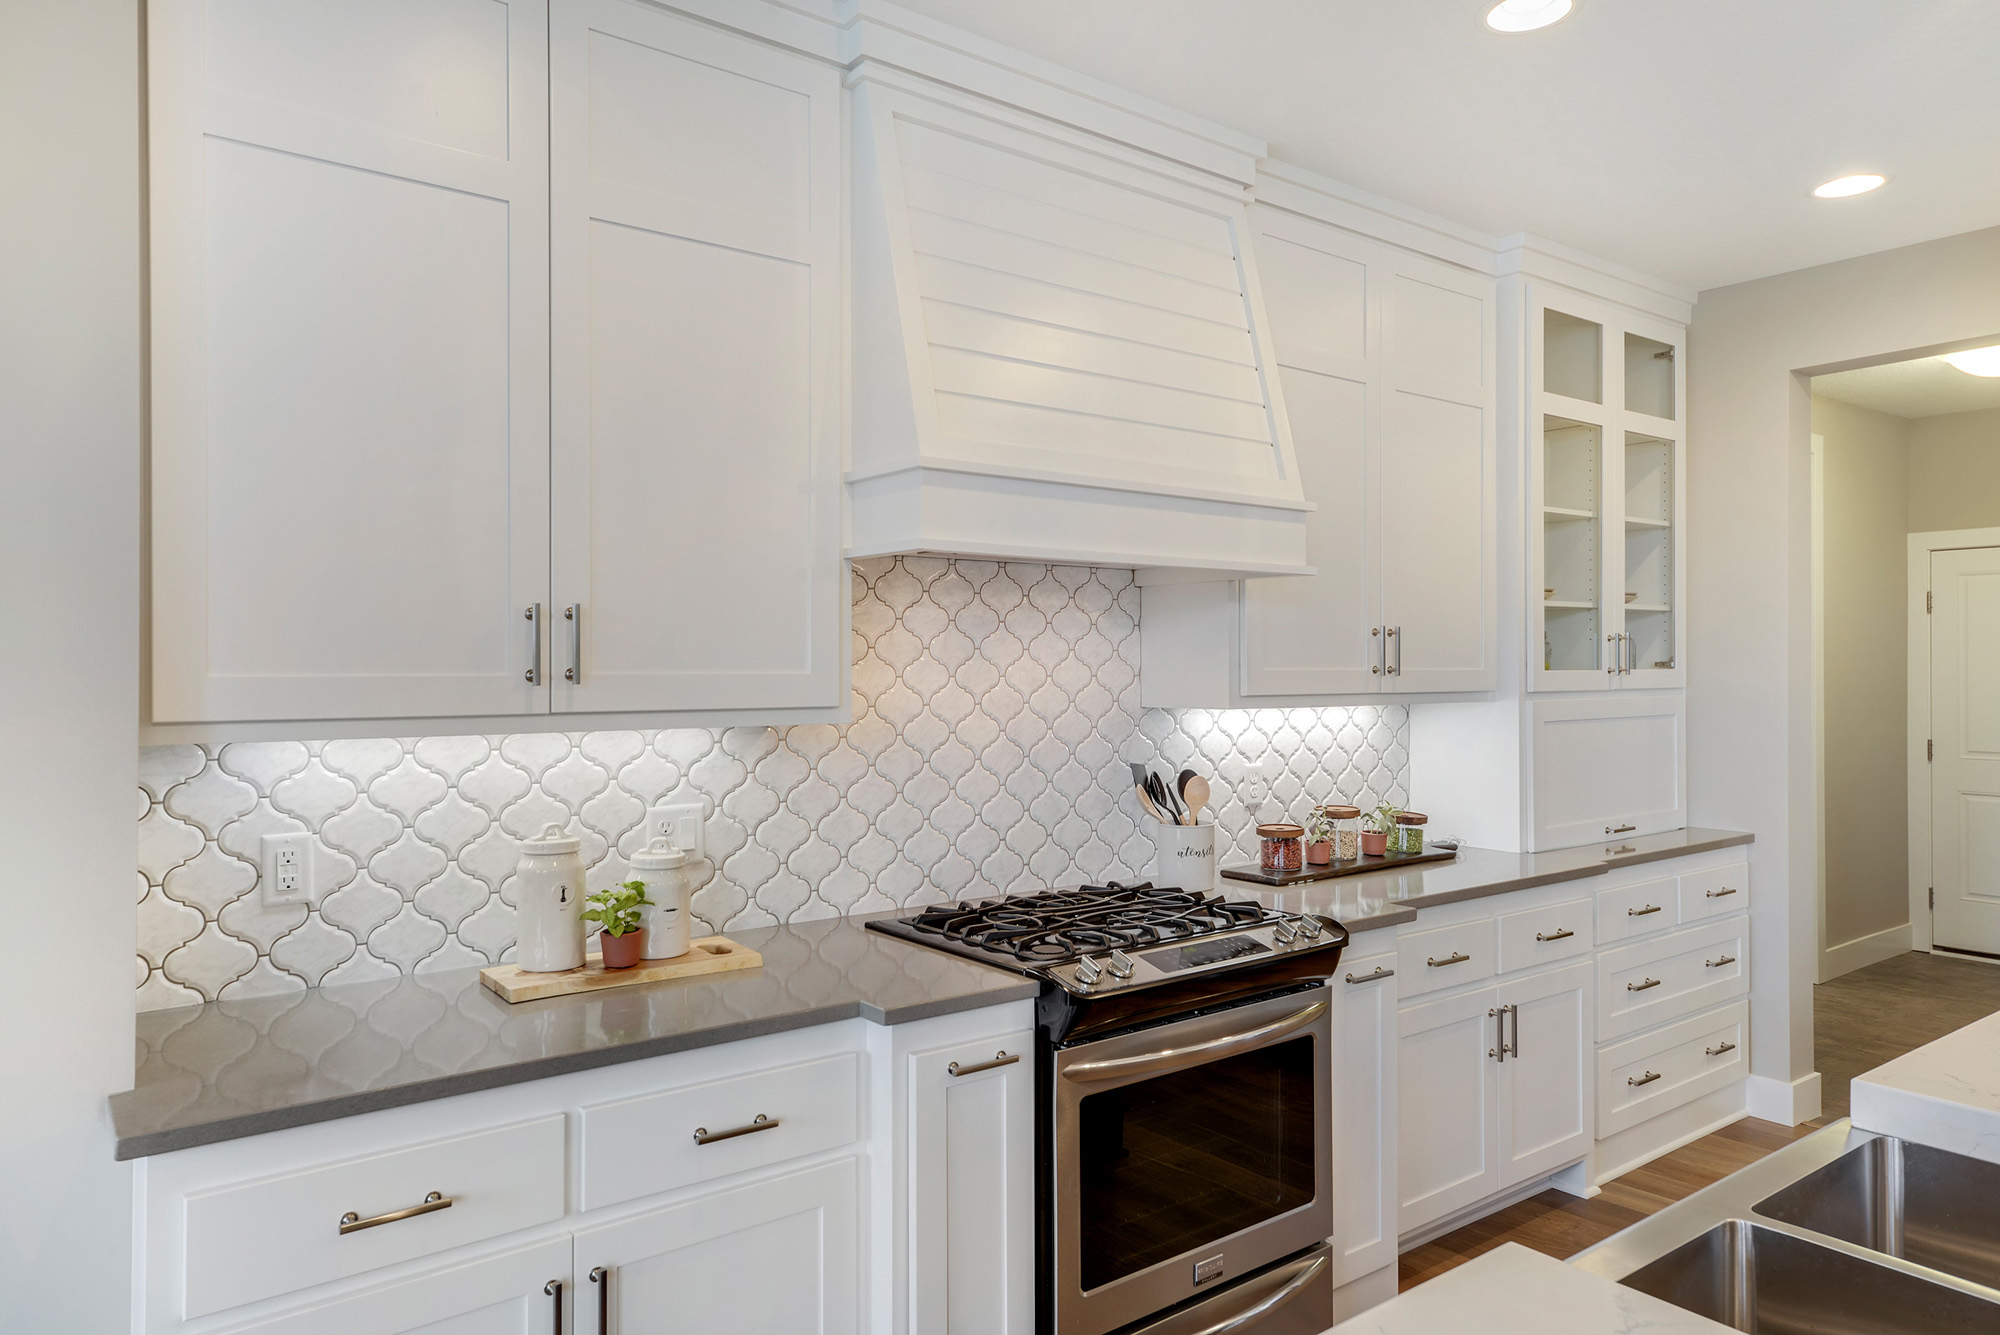 White enameled Kitchen cabinets